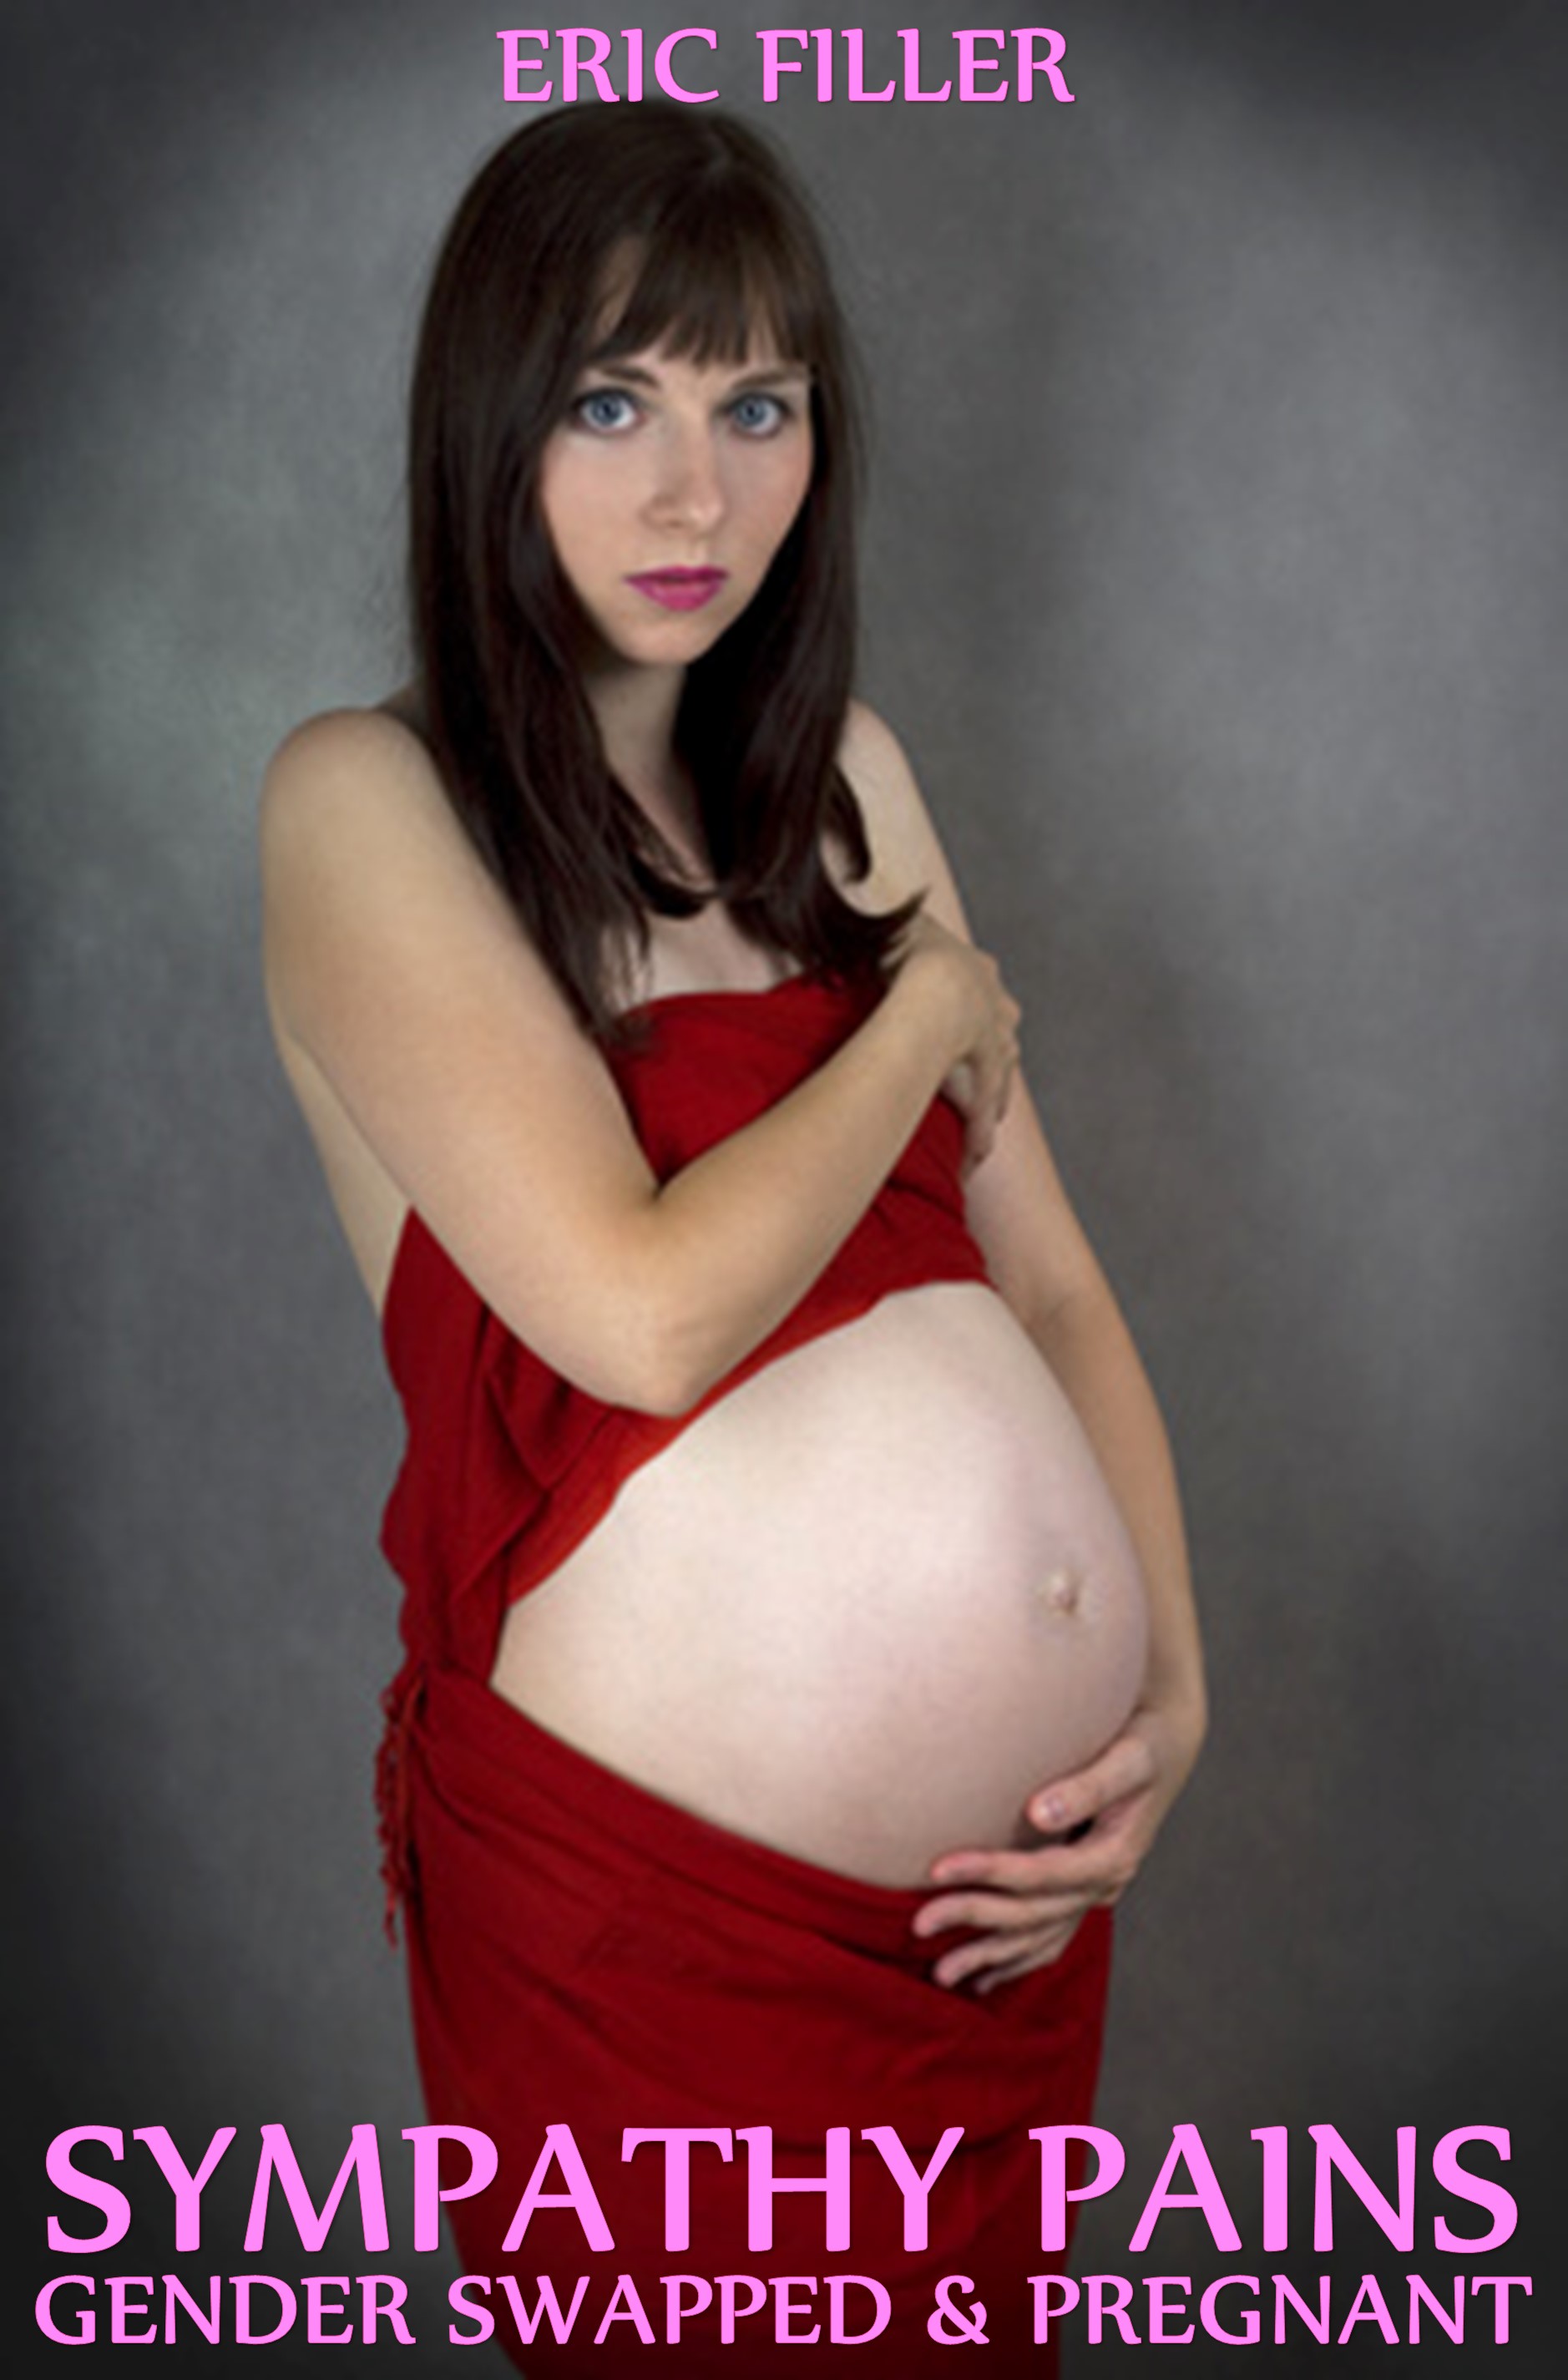 Gender Bender Pregnant